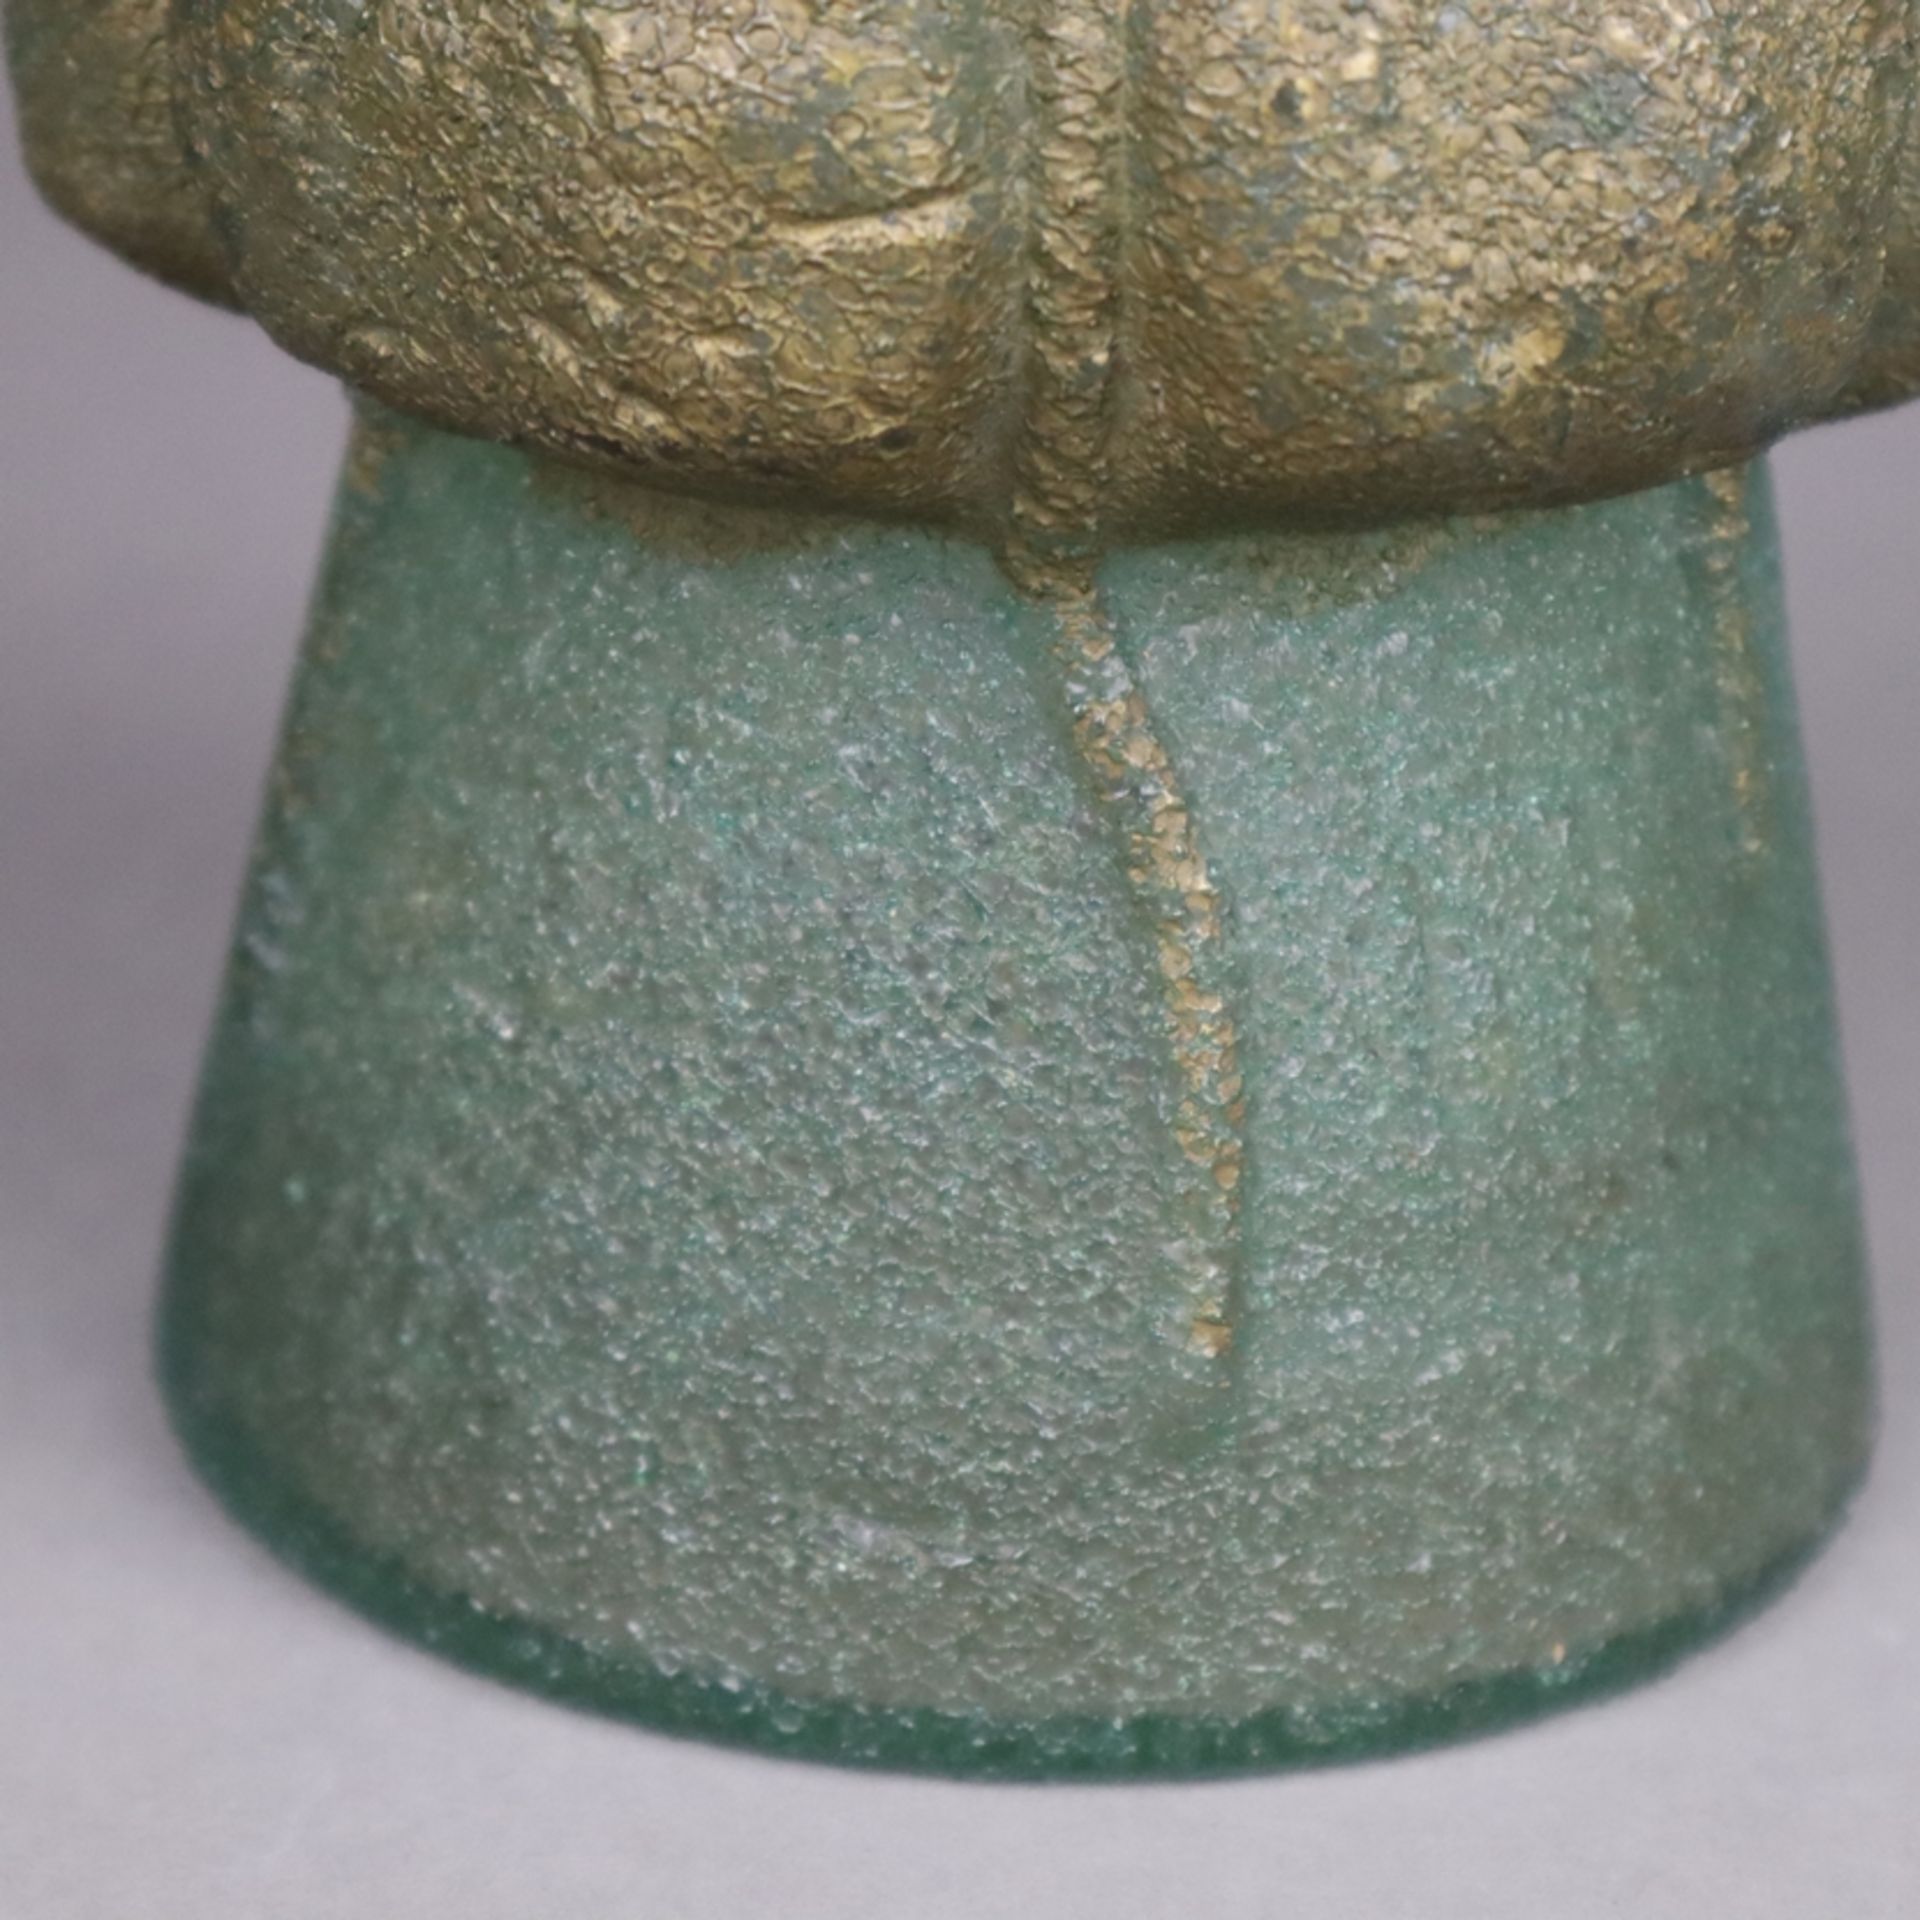 Jugendstil-Vase - Glas mit Metallmontur, doppelwandiger Körper mit strukturiert - Image 6 of 8